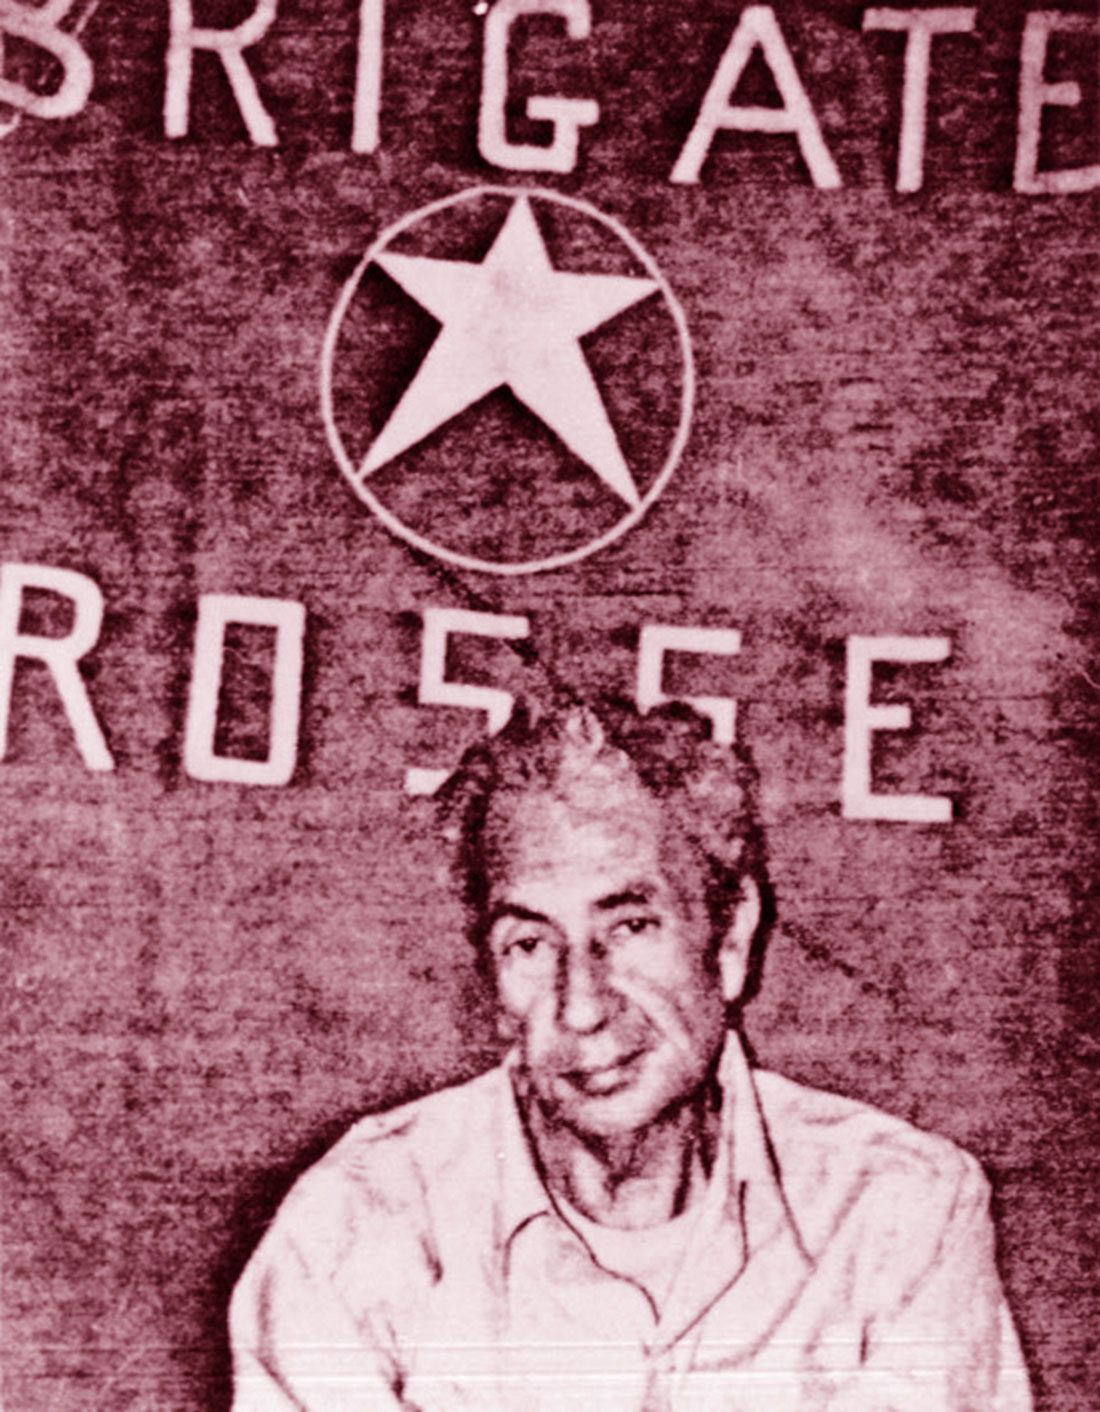 Aldo Moro sequestrato dalle BR (Brigate Rosse)